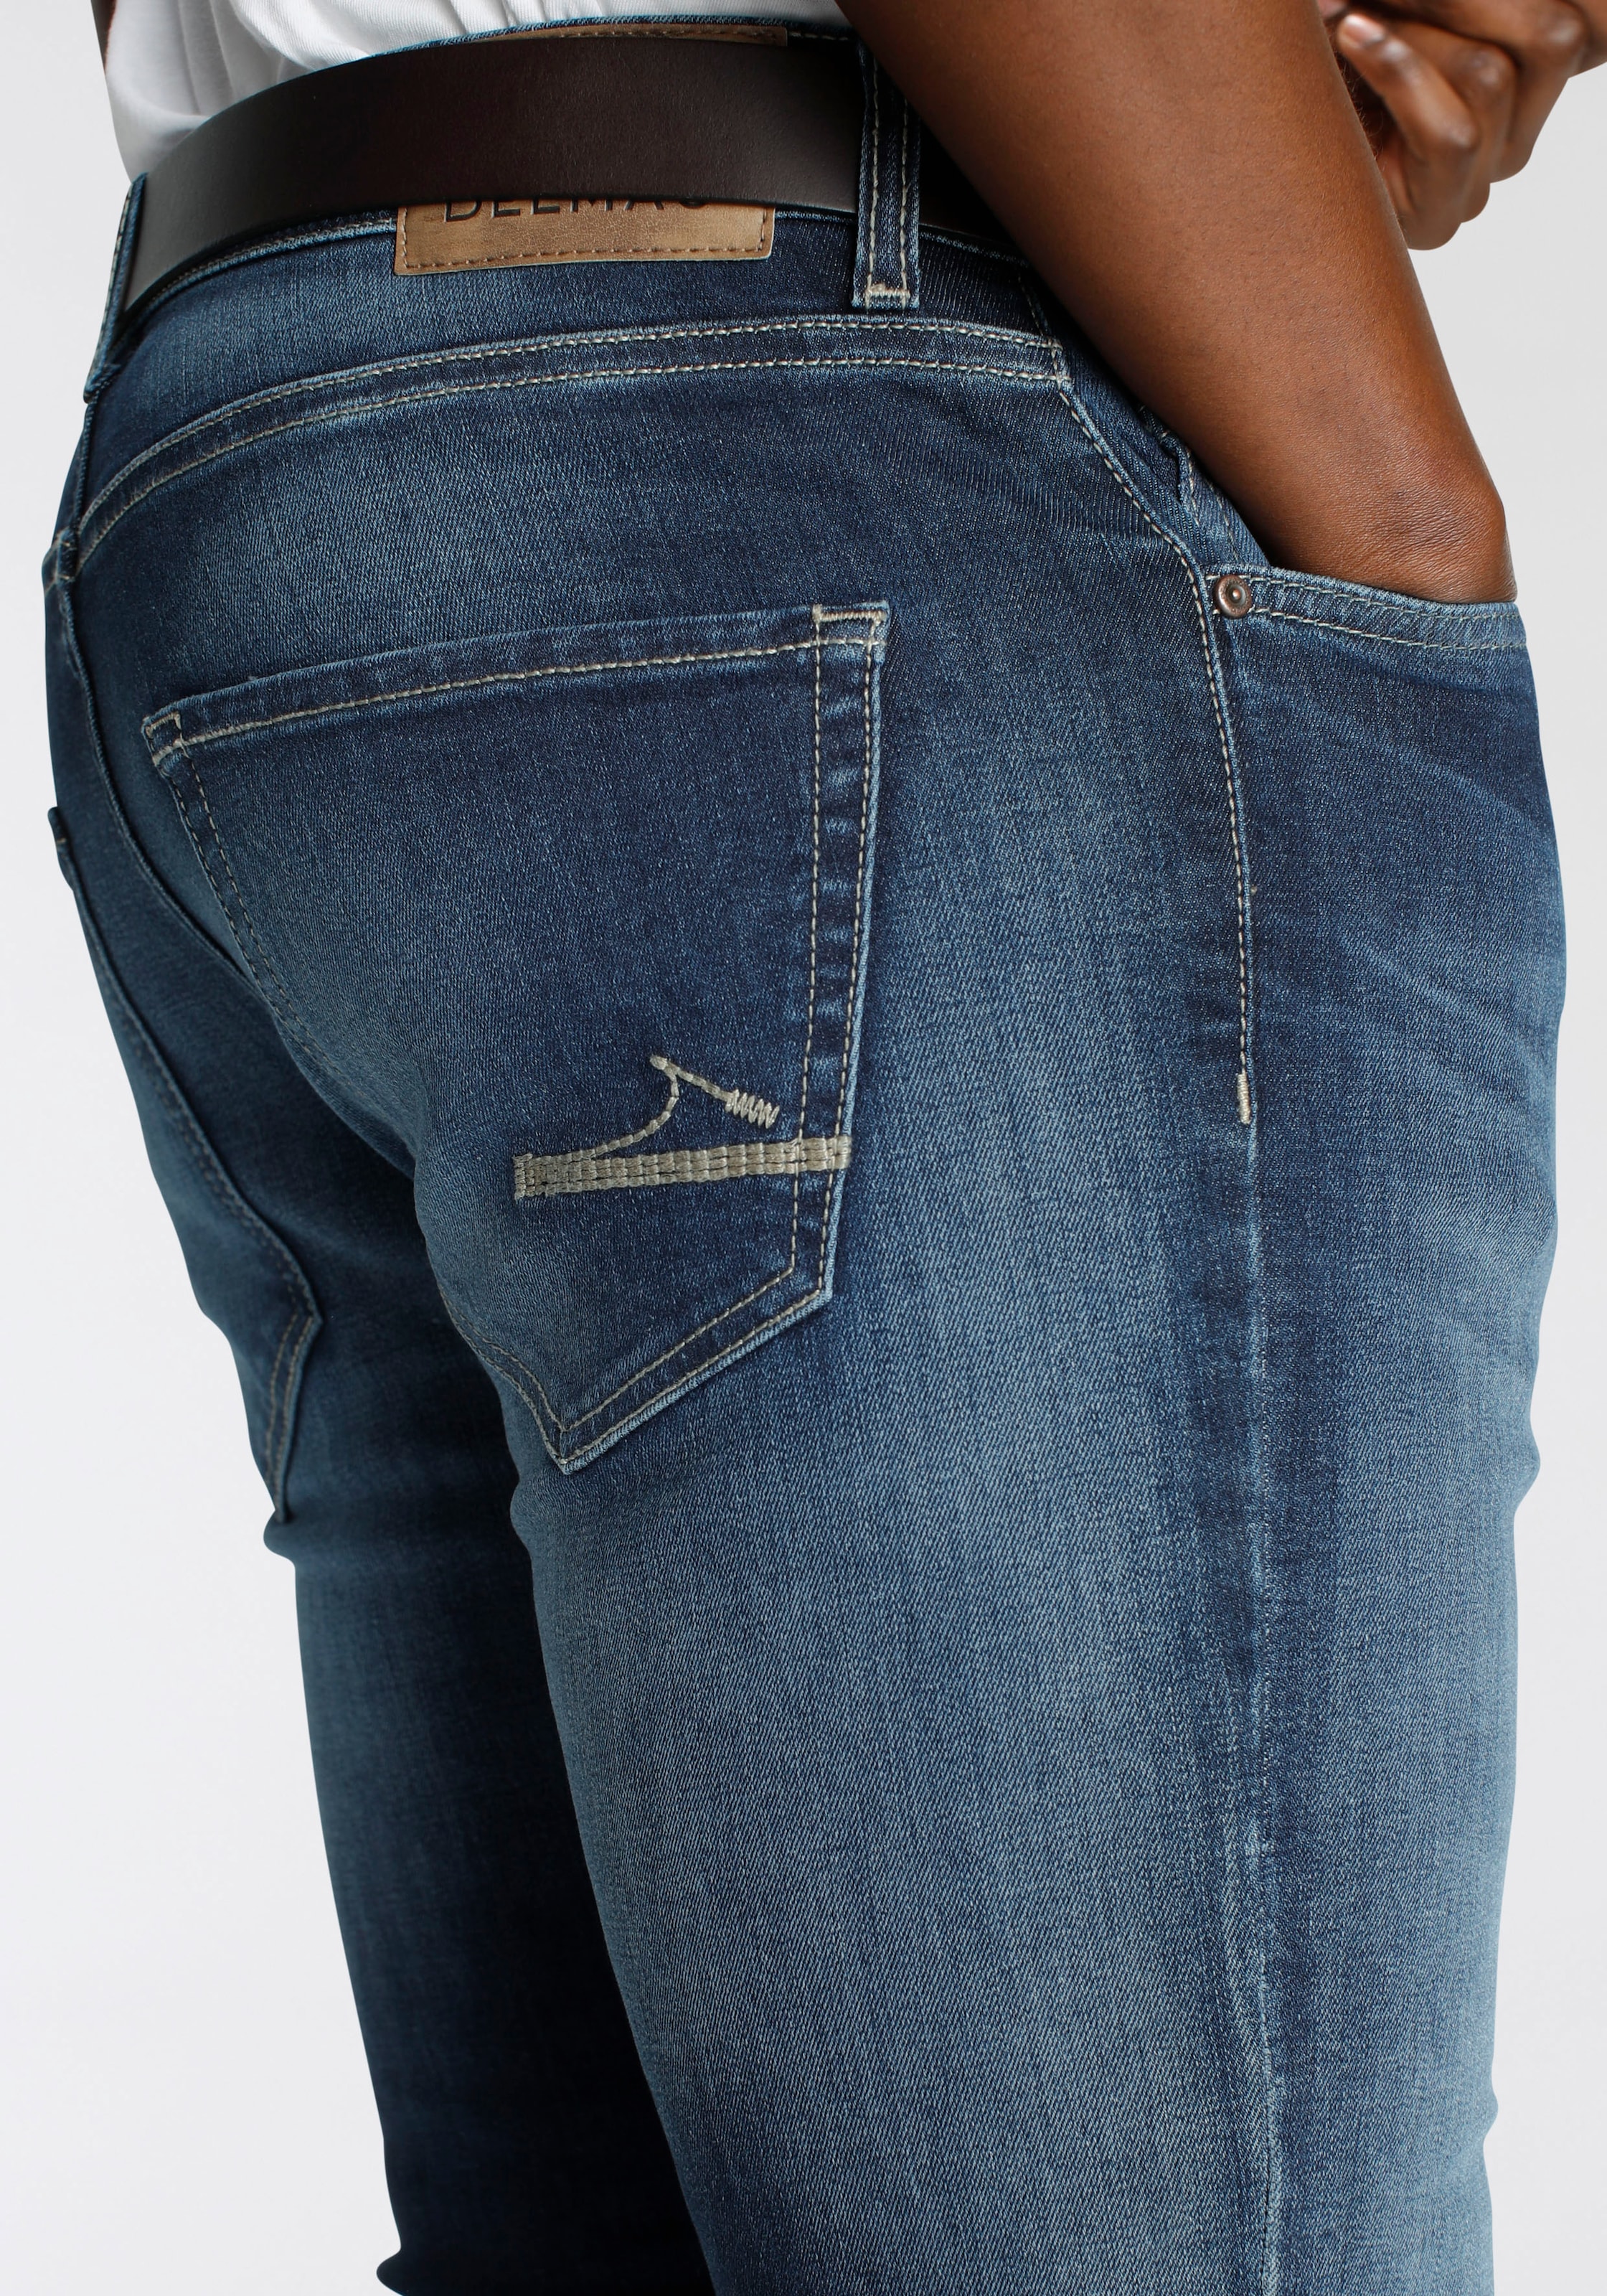 DELMAO Stretch-Jeans NEUE Online-Shop kaufen MARKE! - Innenverarbeitung mit »\